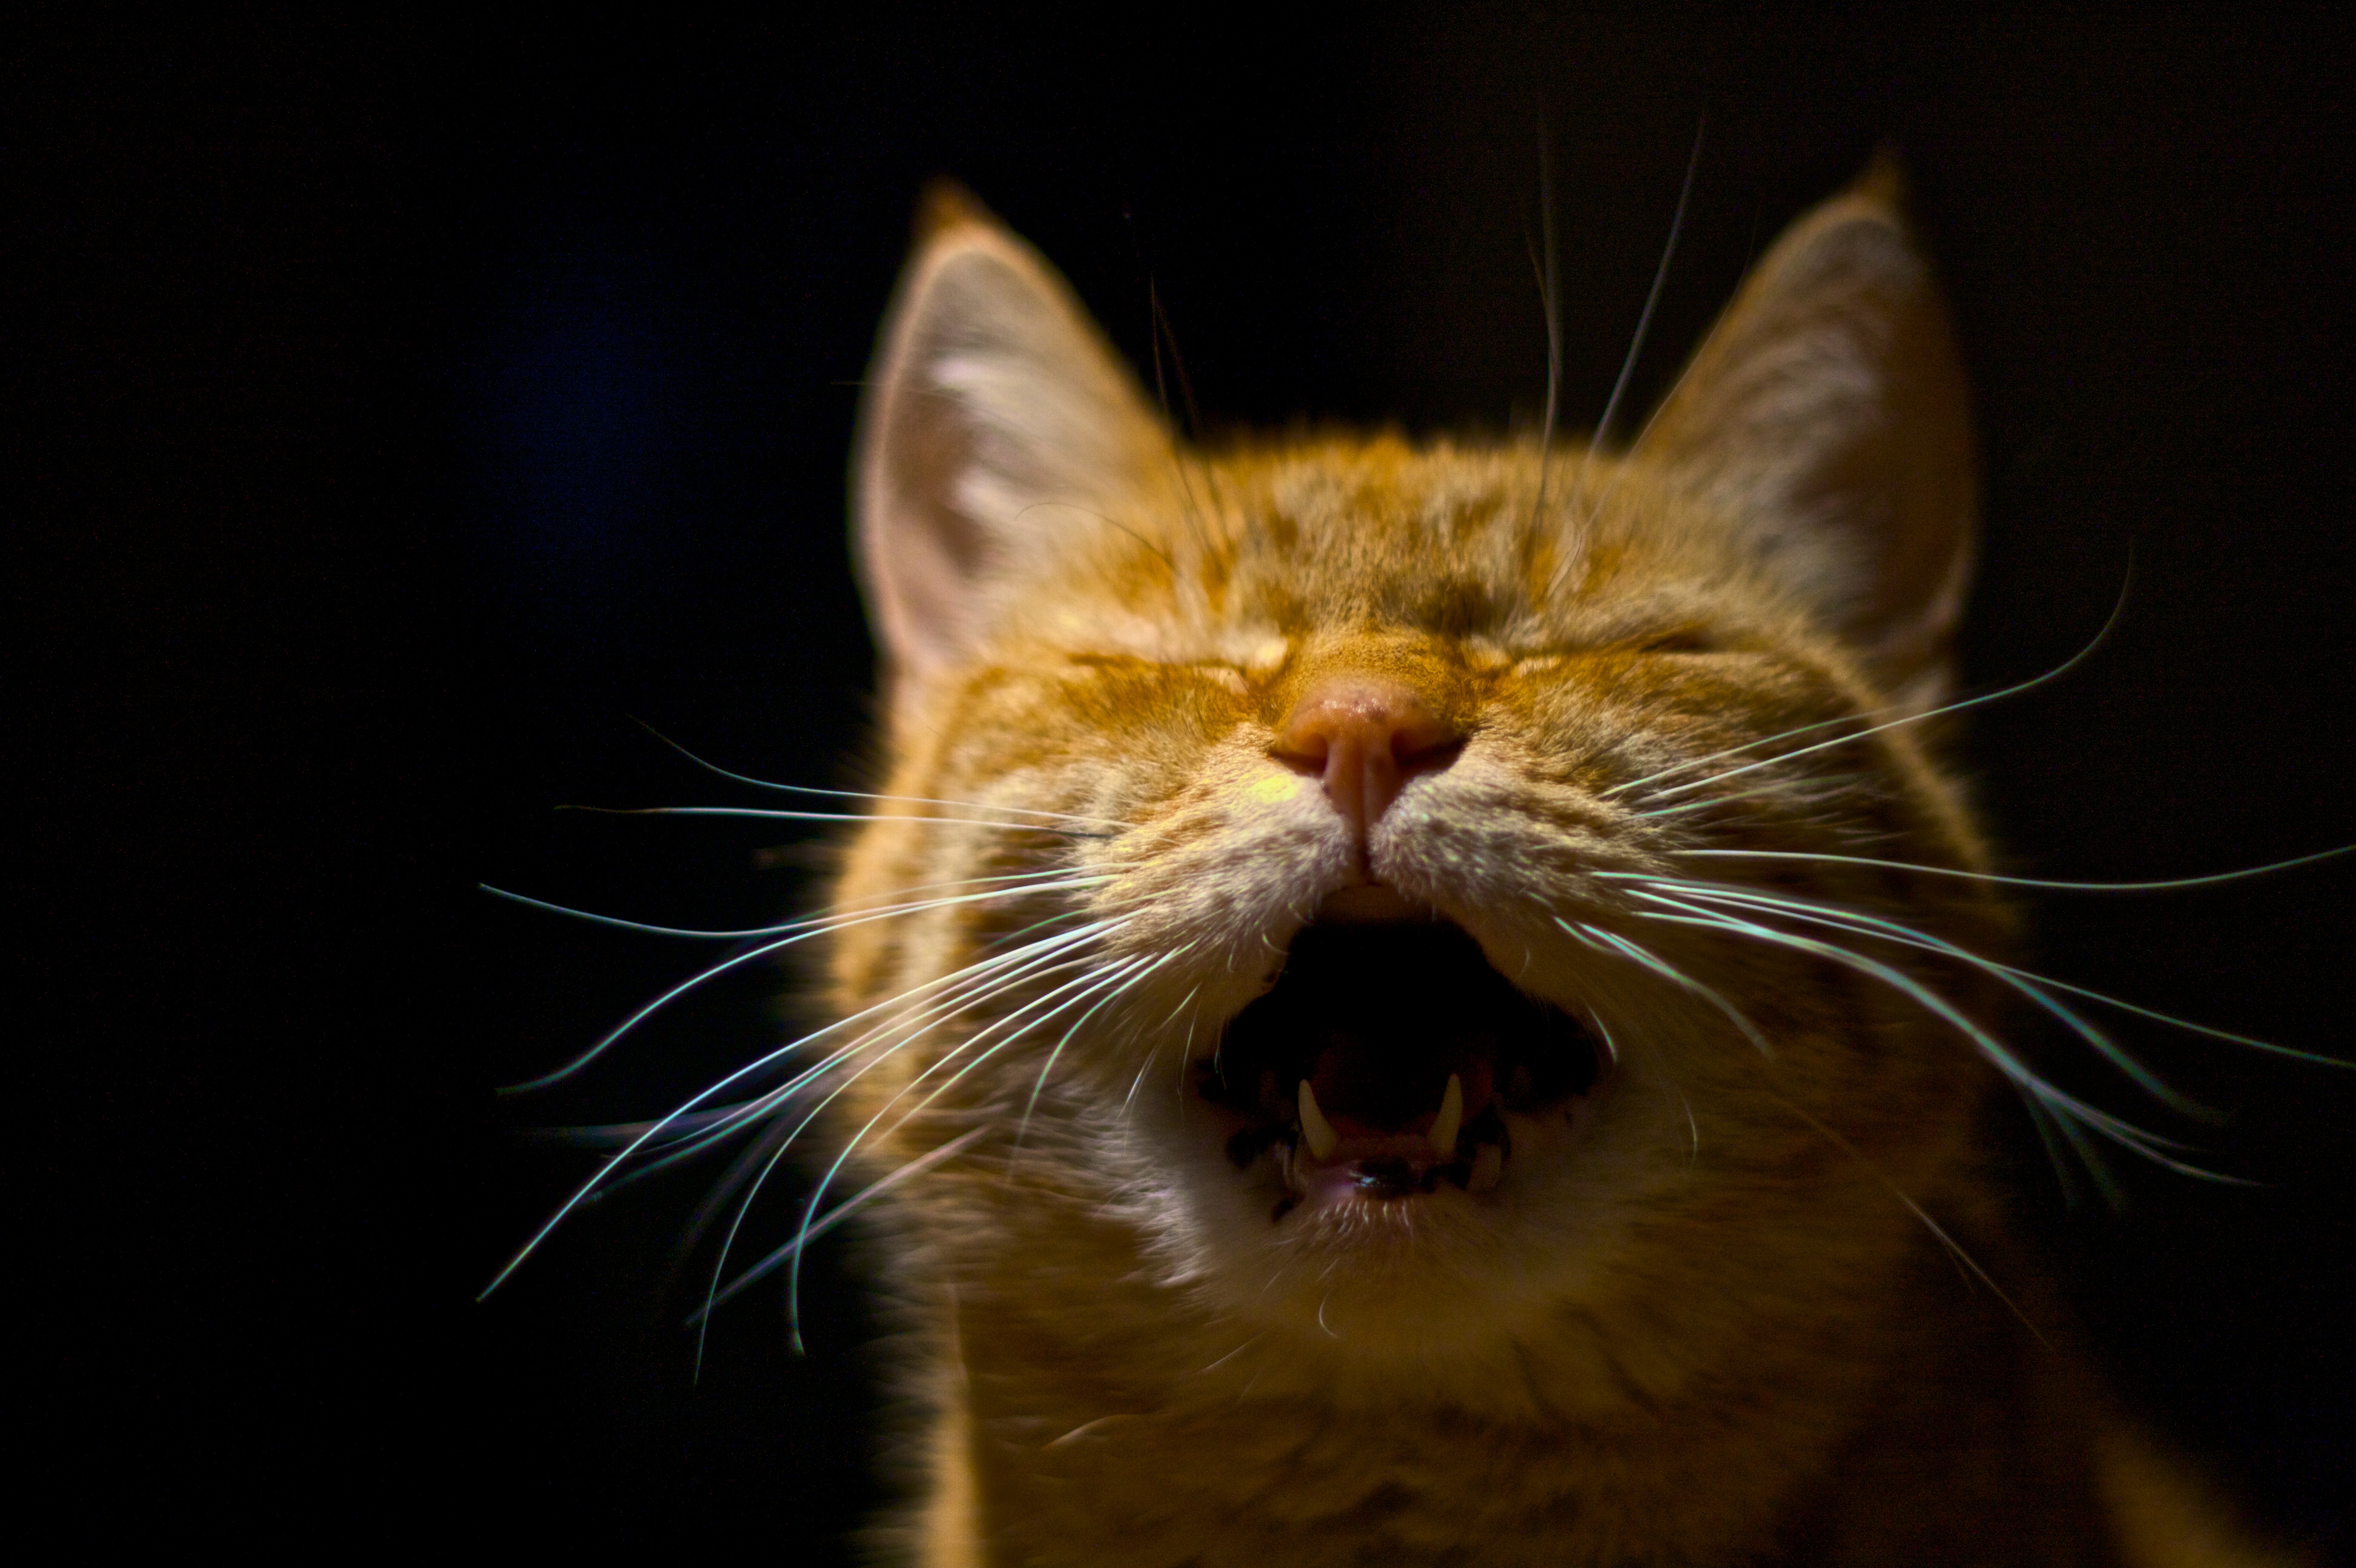 2973212926 b7603faaa6 o اكتشف الآن لماذا تصرخ القطط في الليل 1 اكتشف الآن لماذا تصرخ القطط في الليل